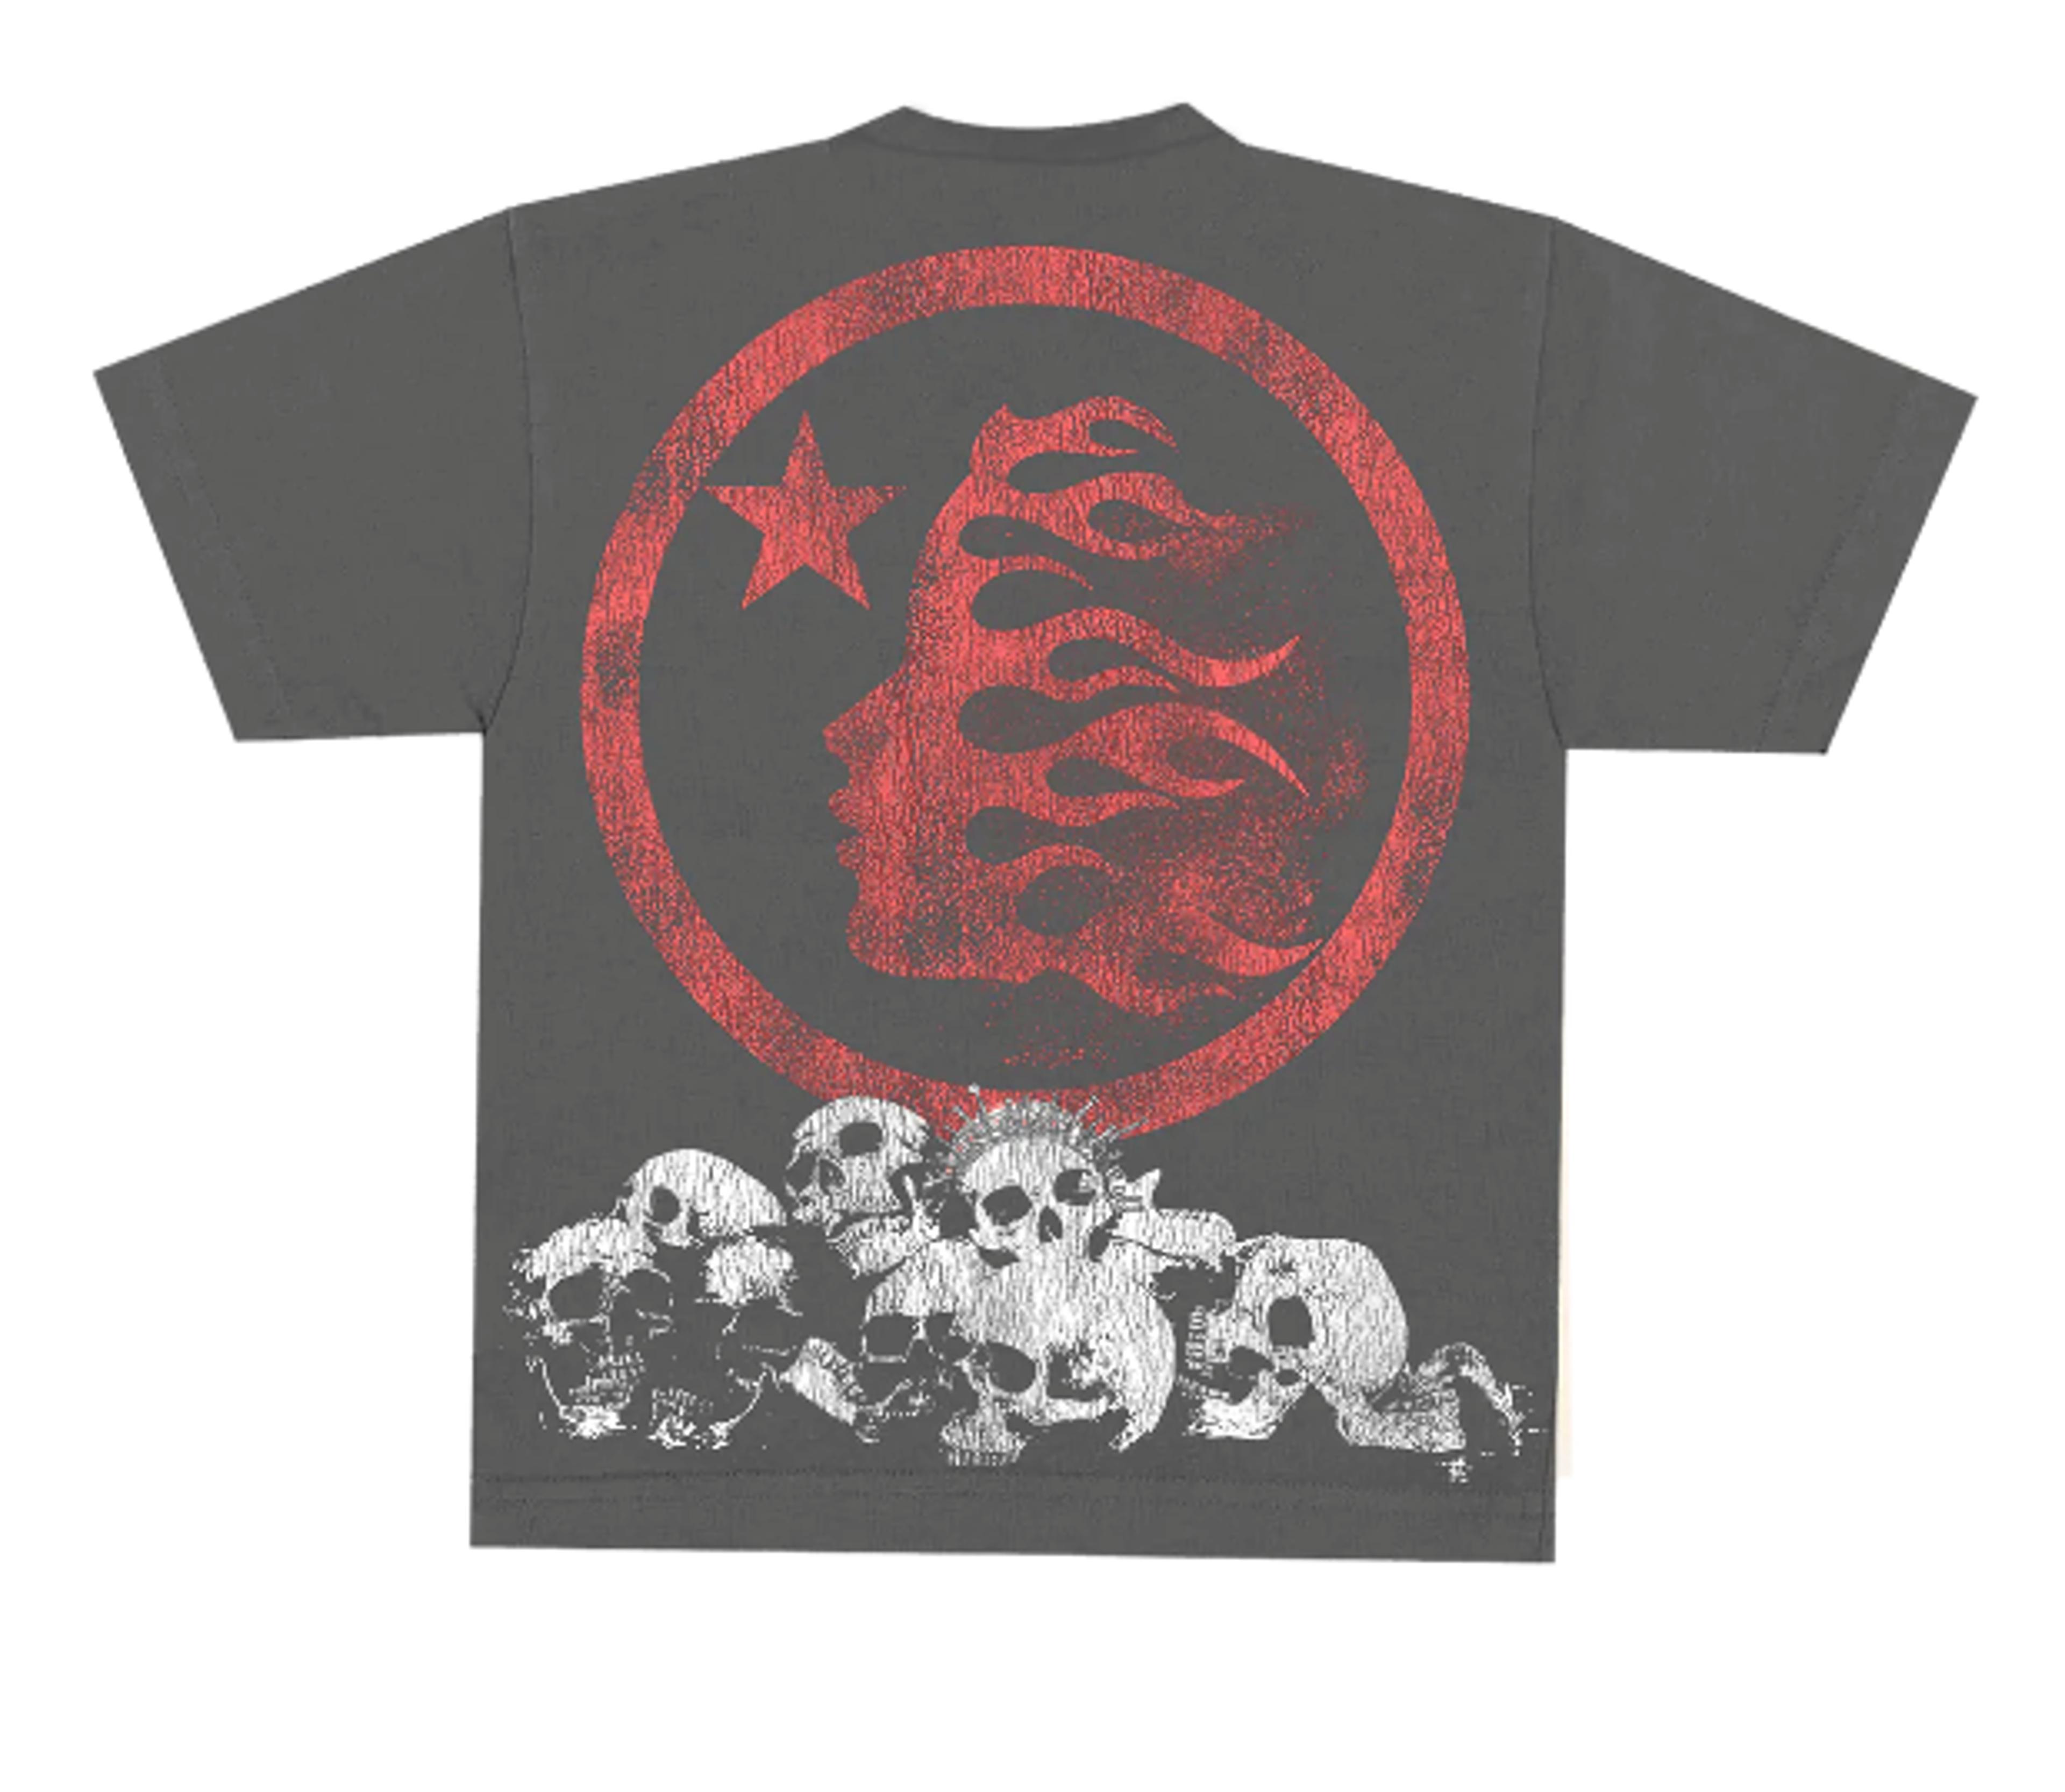 Alternate View 1 of Hellstar Studios Crowned Skull Short Sleeve Tee Shirt Black